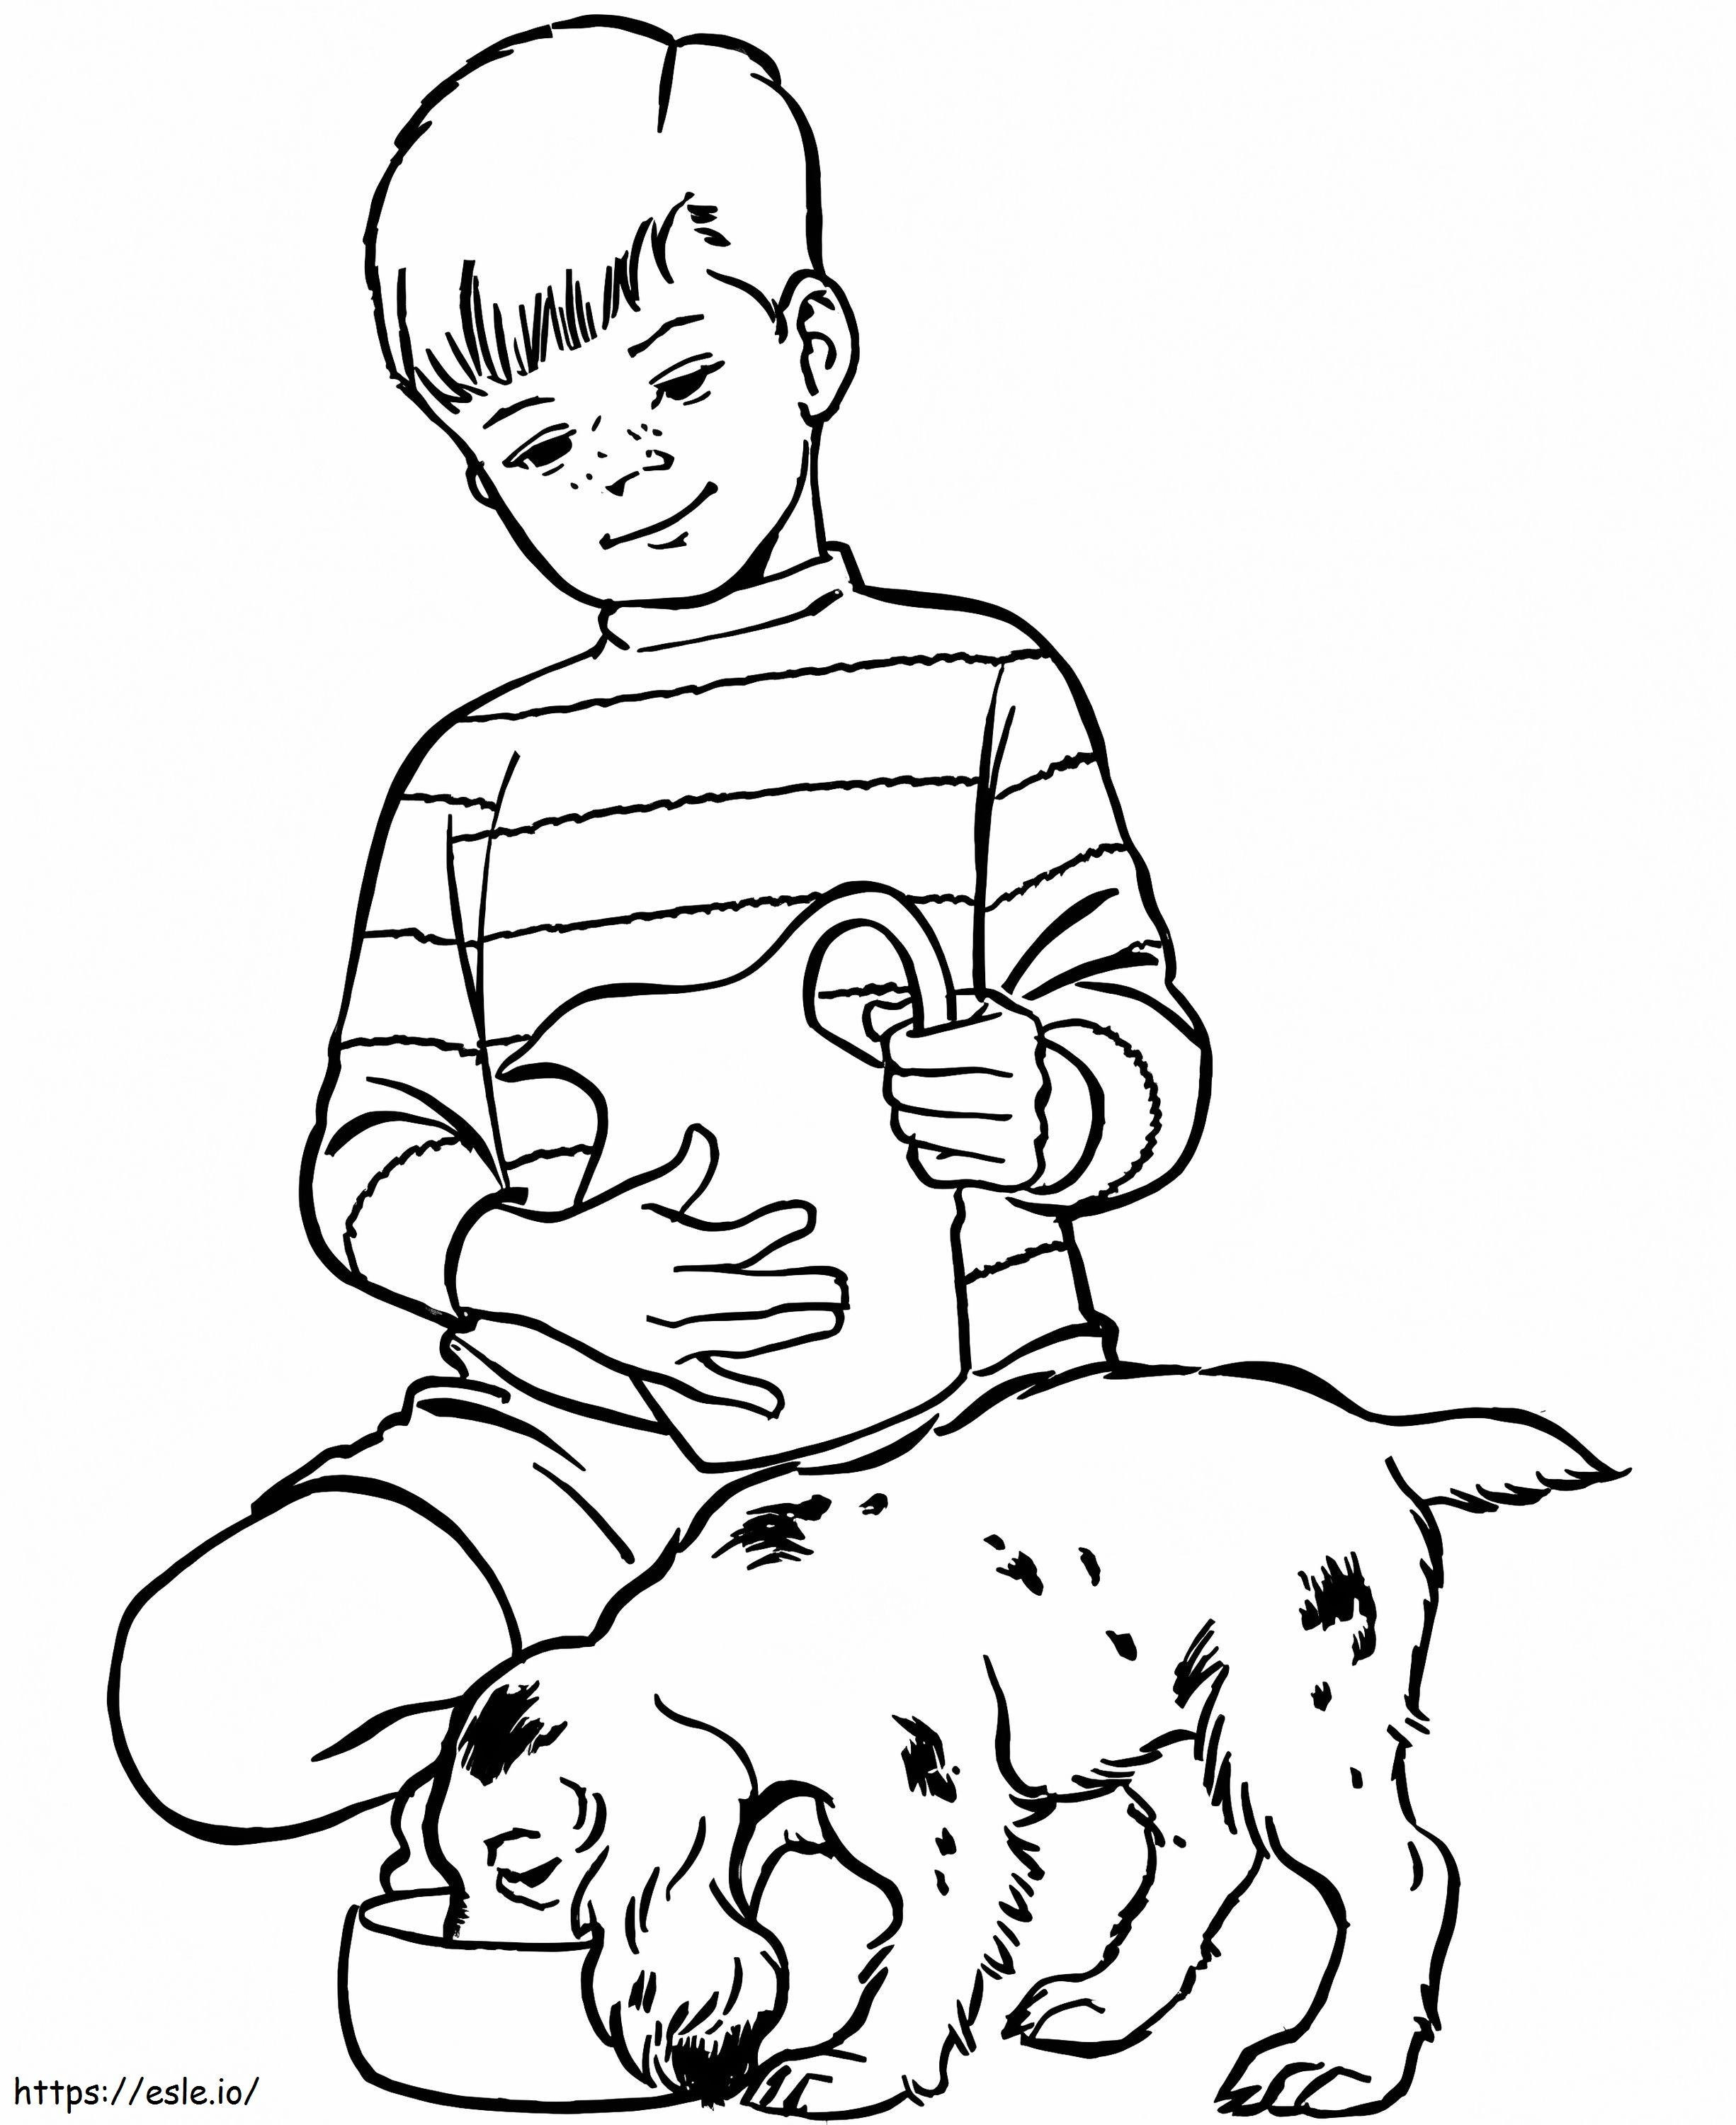 Băiatul și câinele lui de colorat